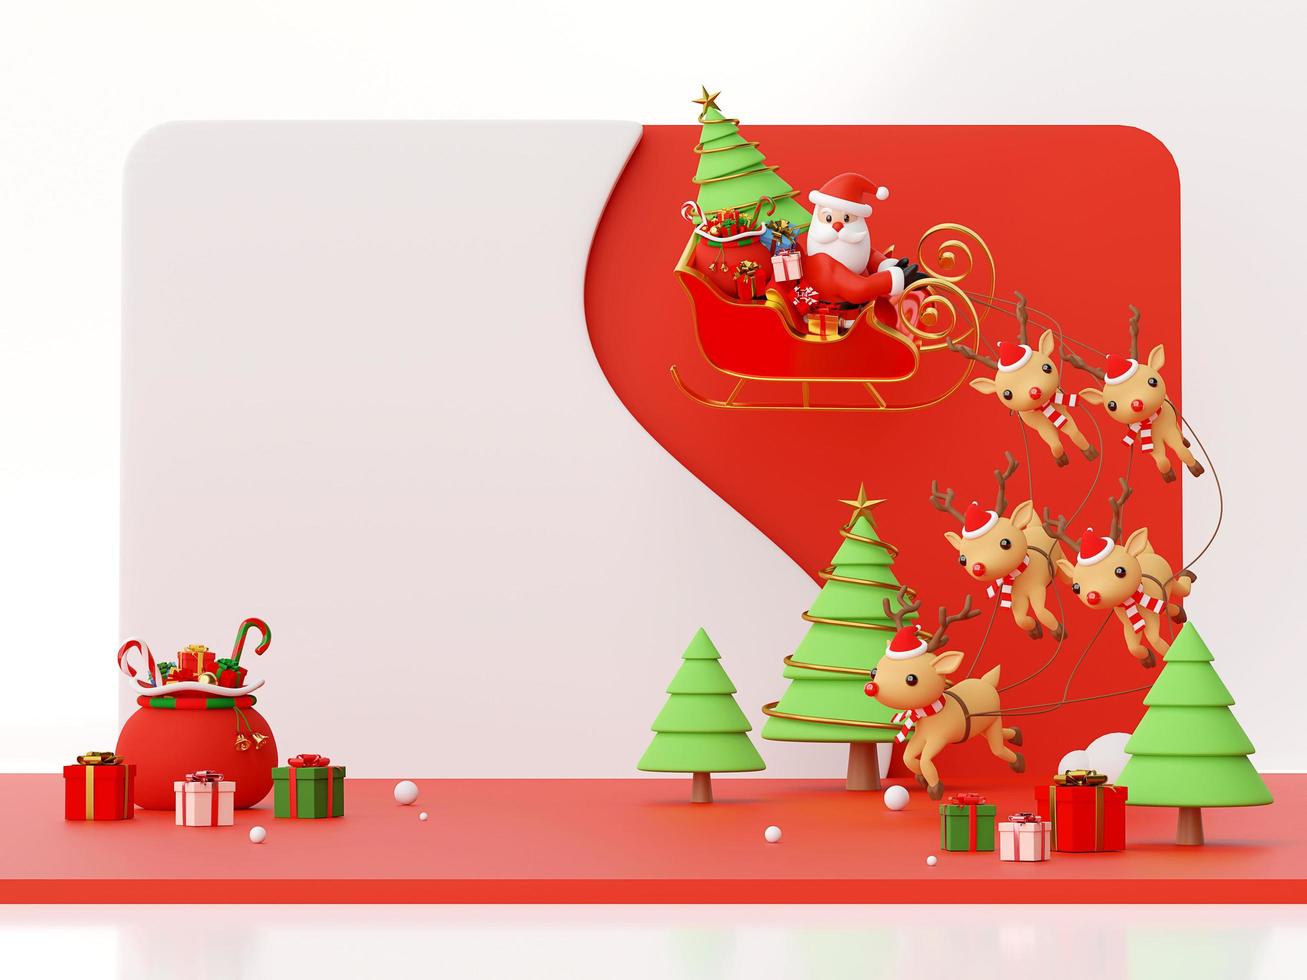 Szene des Weihnachtsmannes auf einem Schlitten voller Weihnachtsgeschenke und gezogen von Rentieren, 3D-Rendering foto